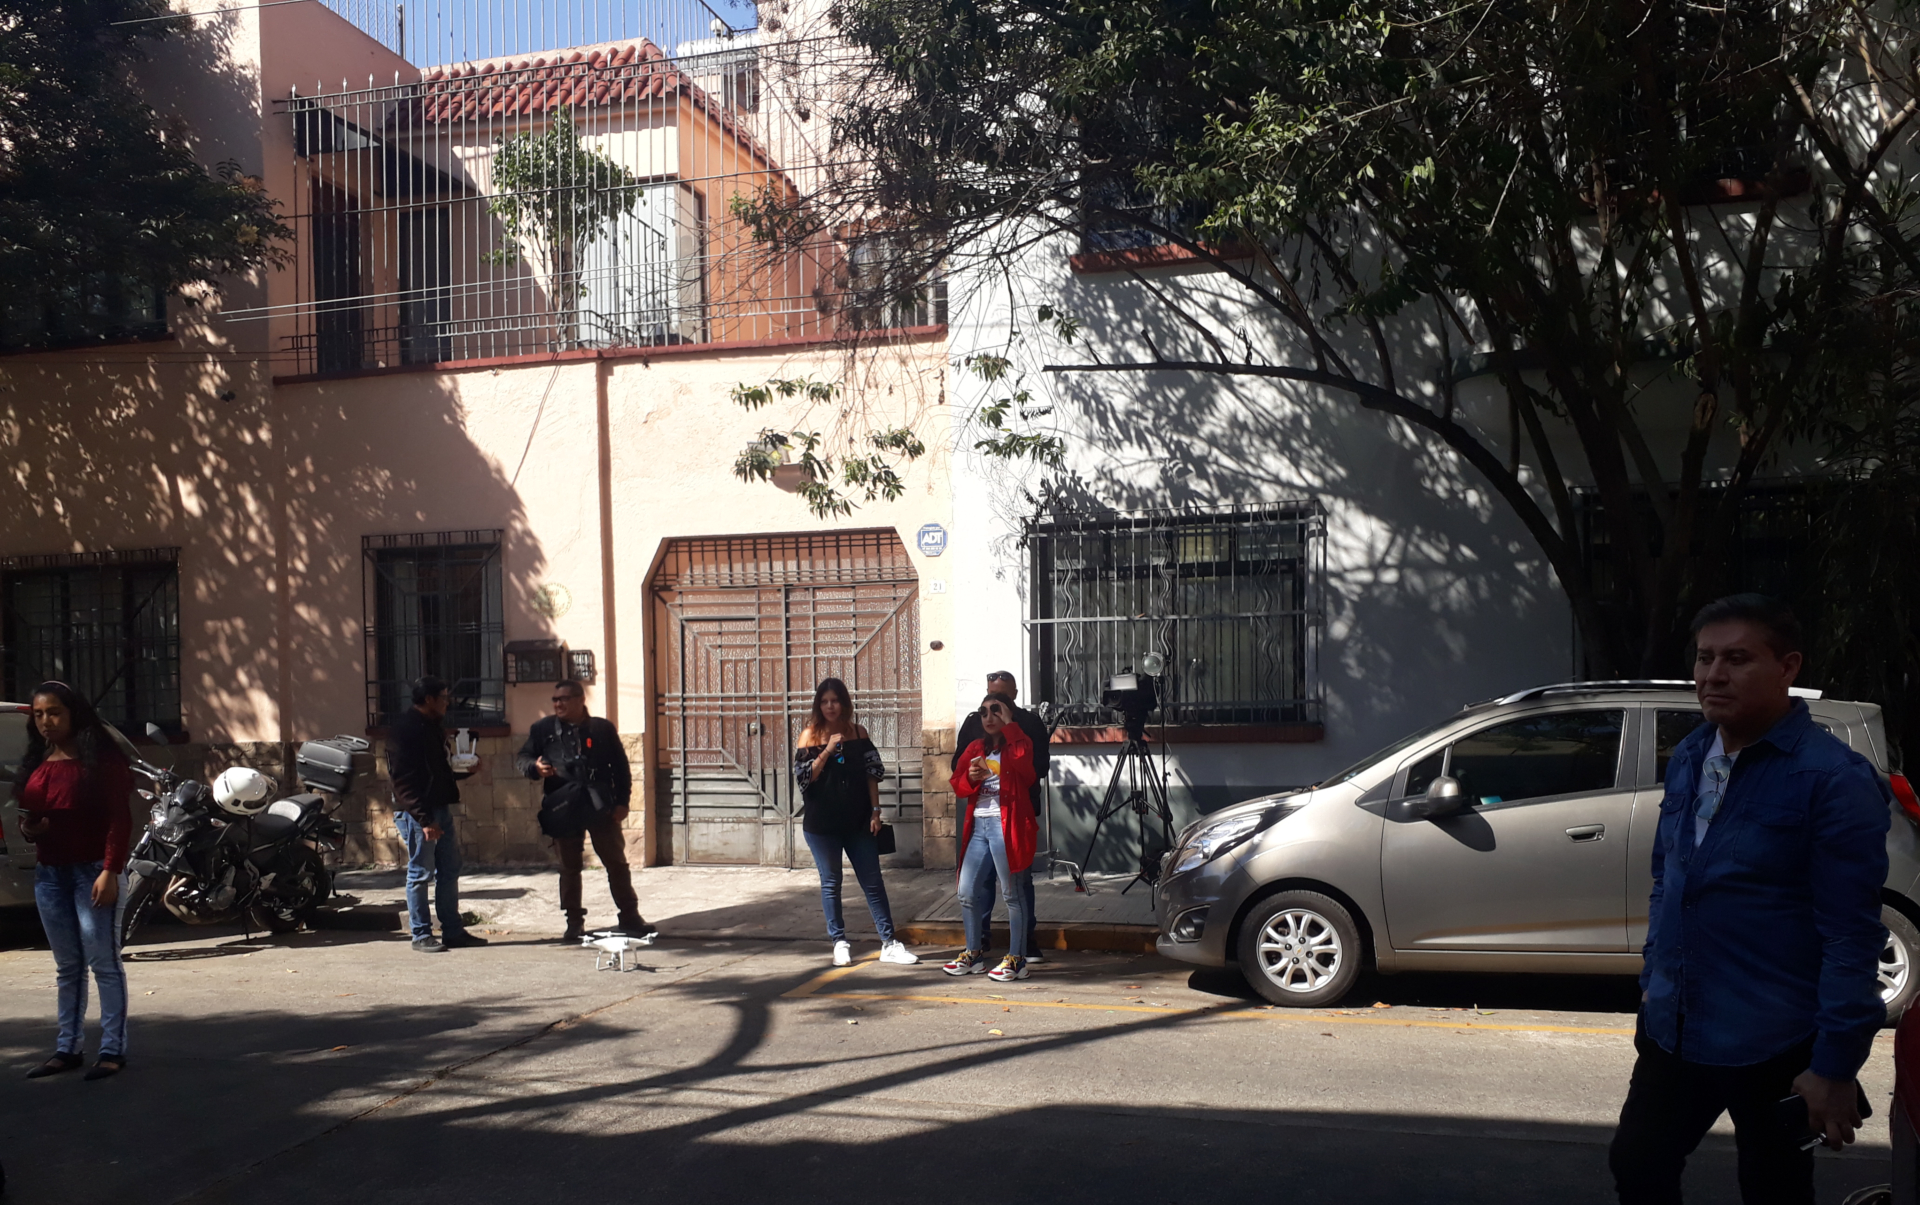 La gente fotografía la casa (Foto: Juan Vicente Manrique, Infobae México)